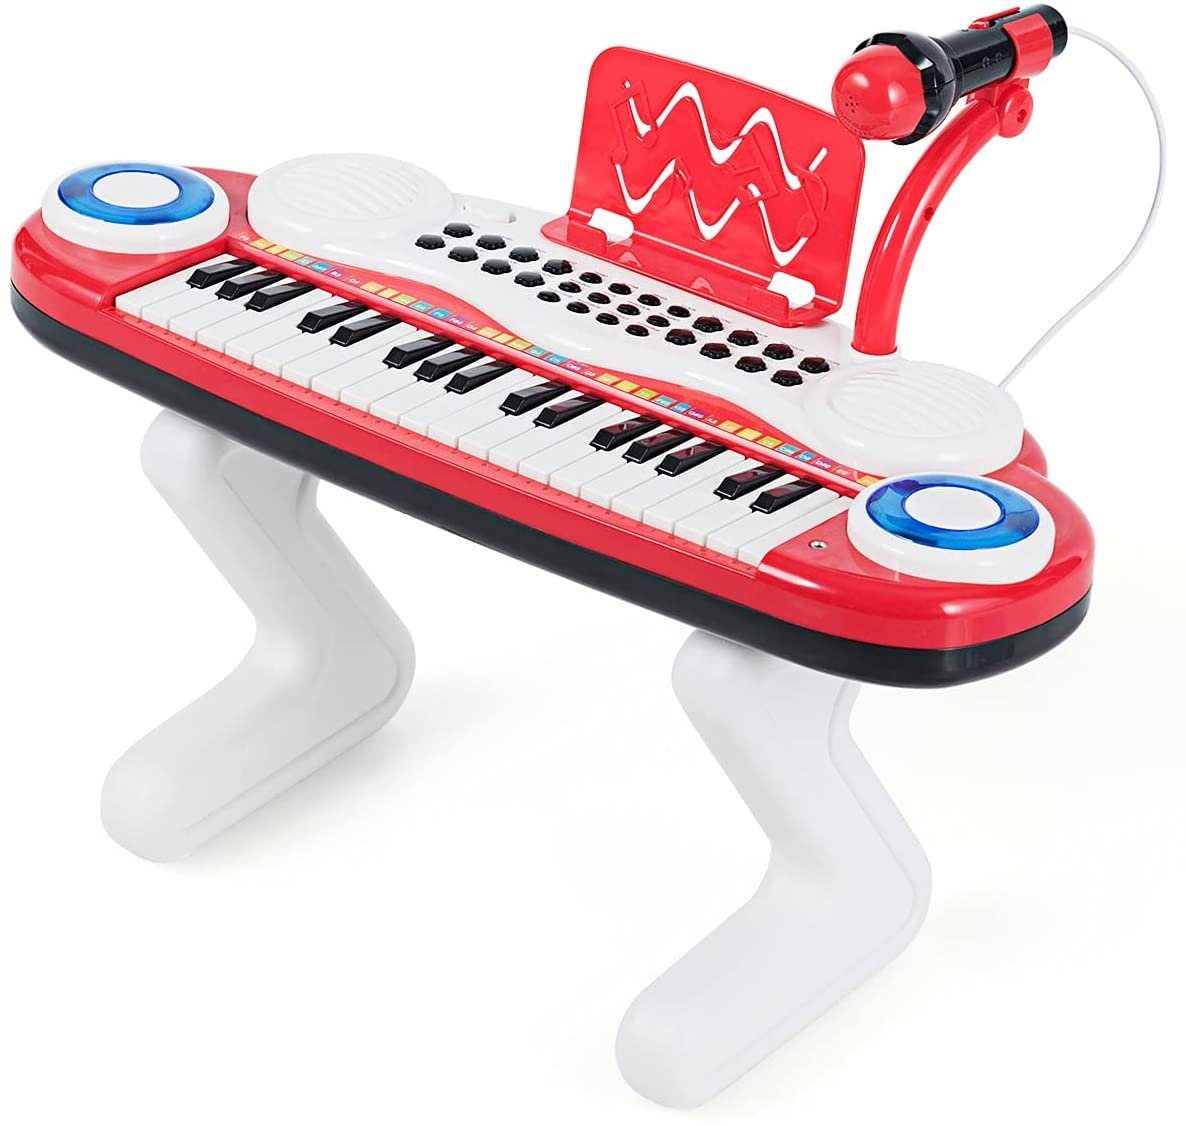 & Abspiel-Funktion 37 Tasten Kinder Keyboard Klaviertastatur Ständer & Aufnahme 